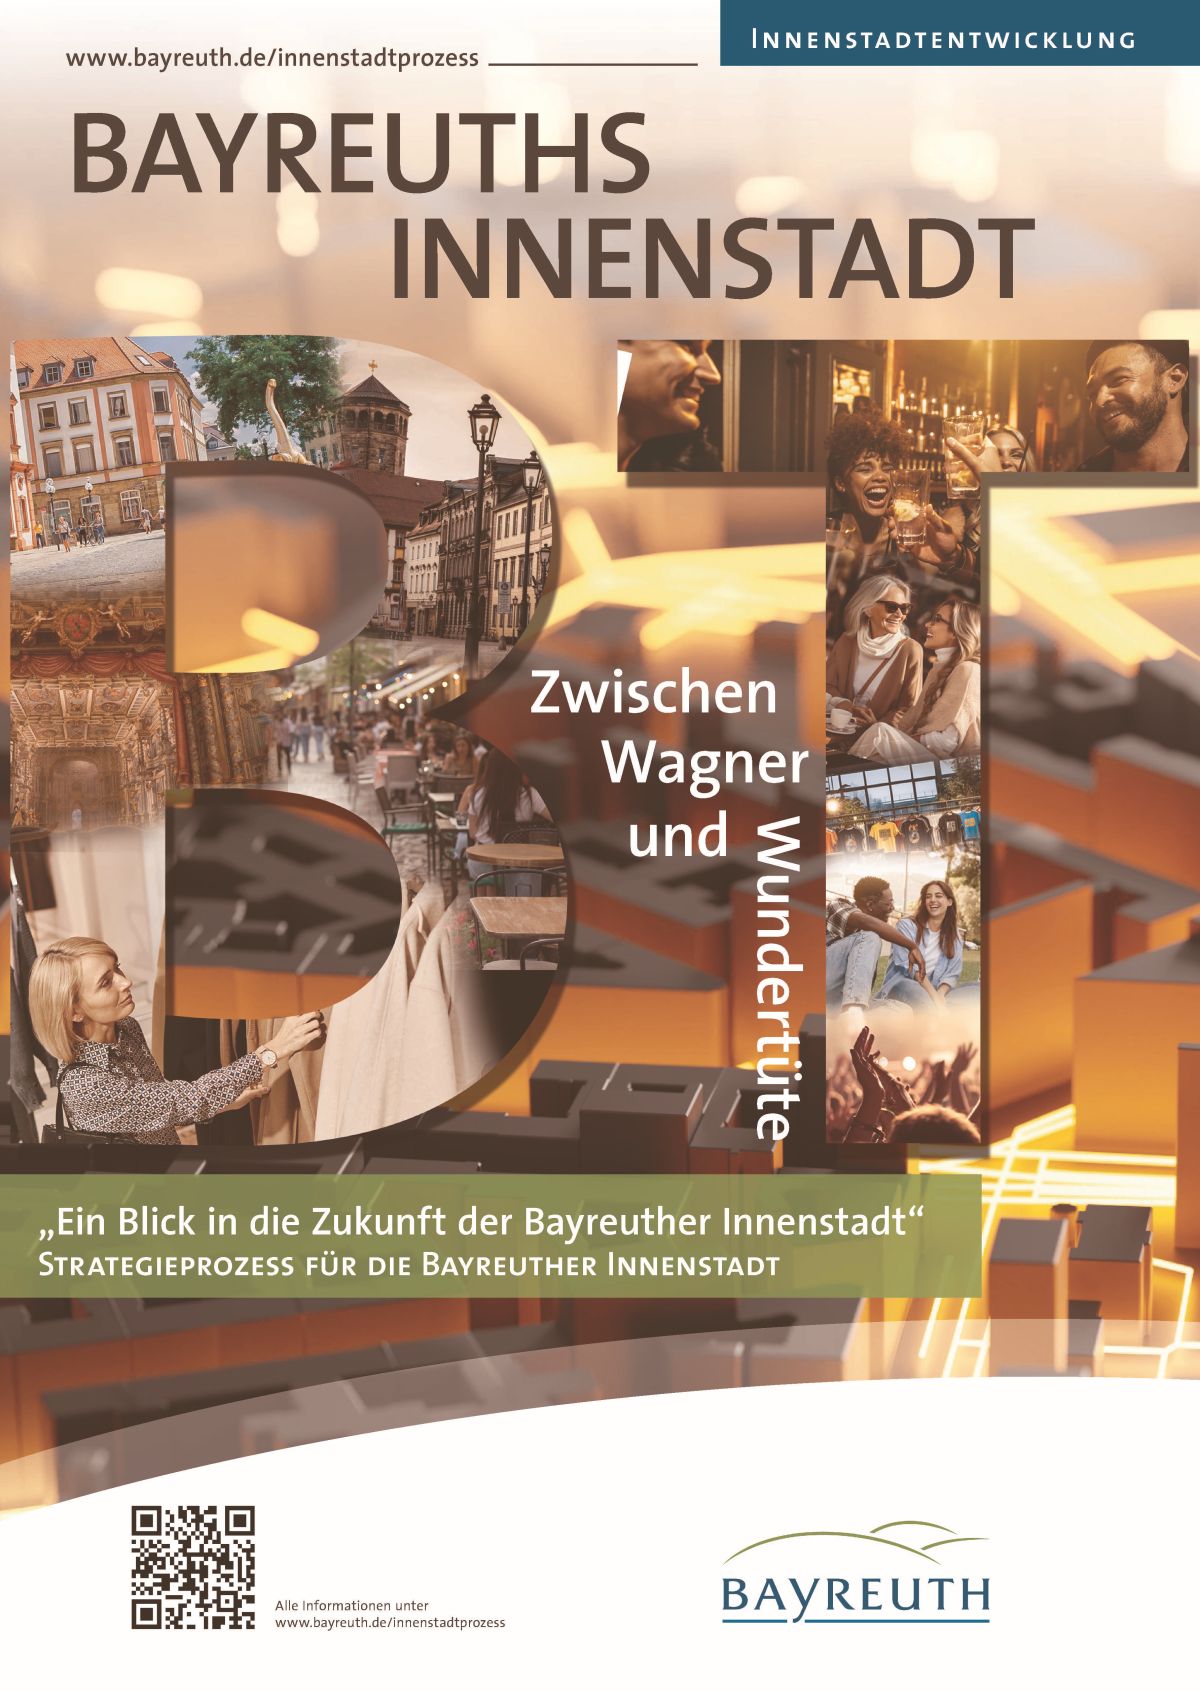 Plakat zur Bayreuths Innenstadt "Zwischen Wagner und Wundertüte" mit Impressionen aus der Innenstadt